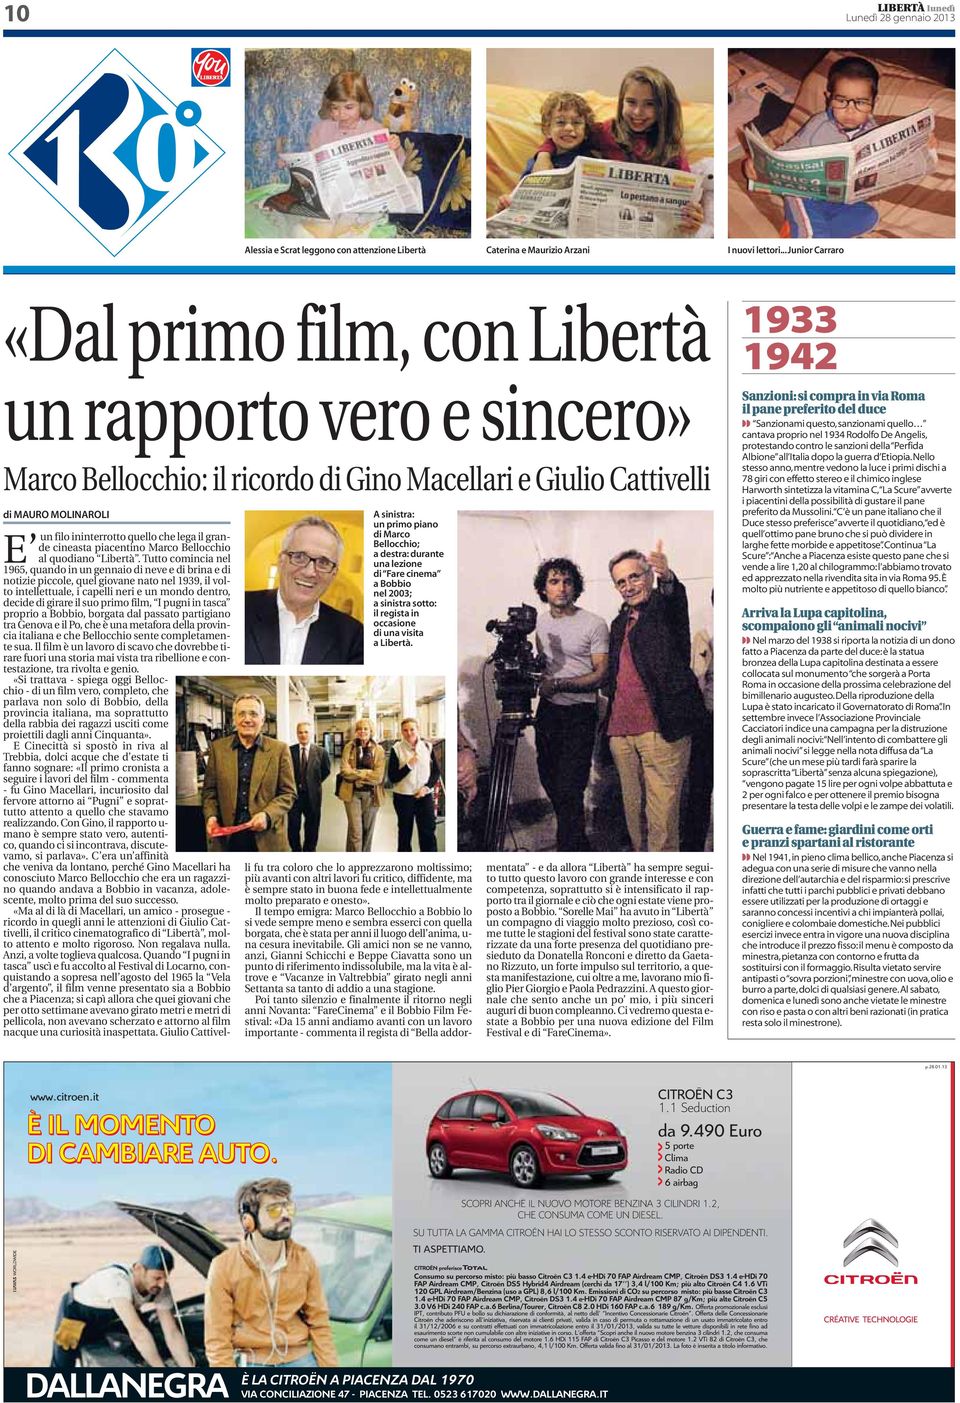 il grande cineasta piacentino Marco Bellocchio al quodiano Libertà.